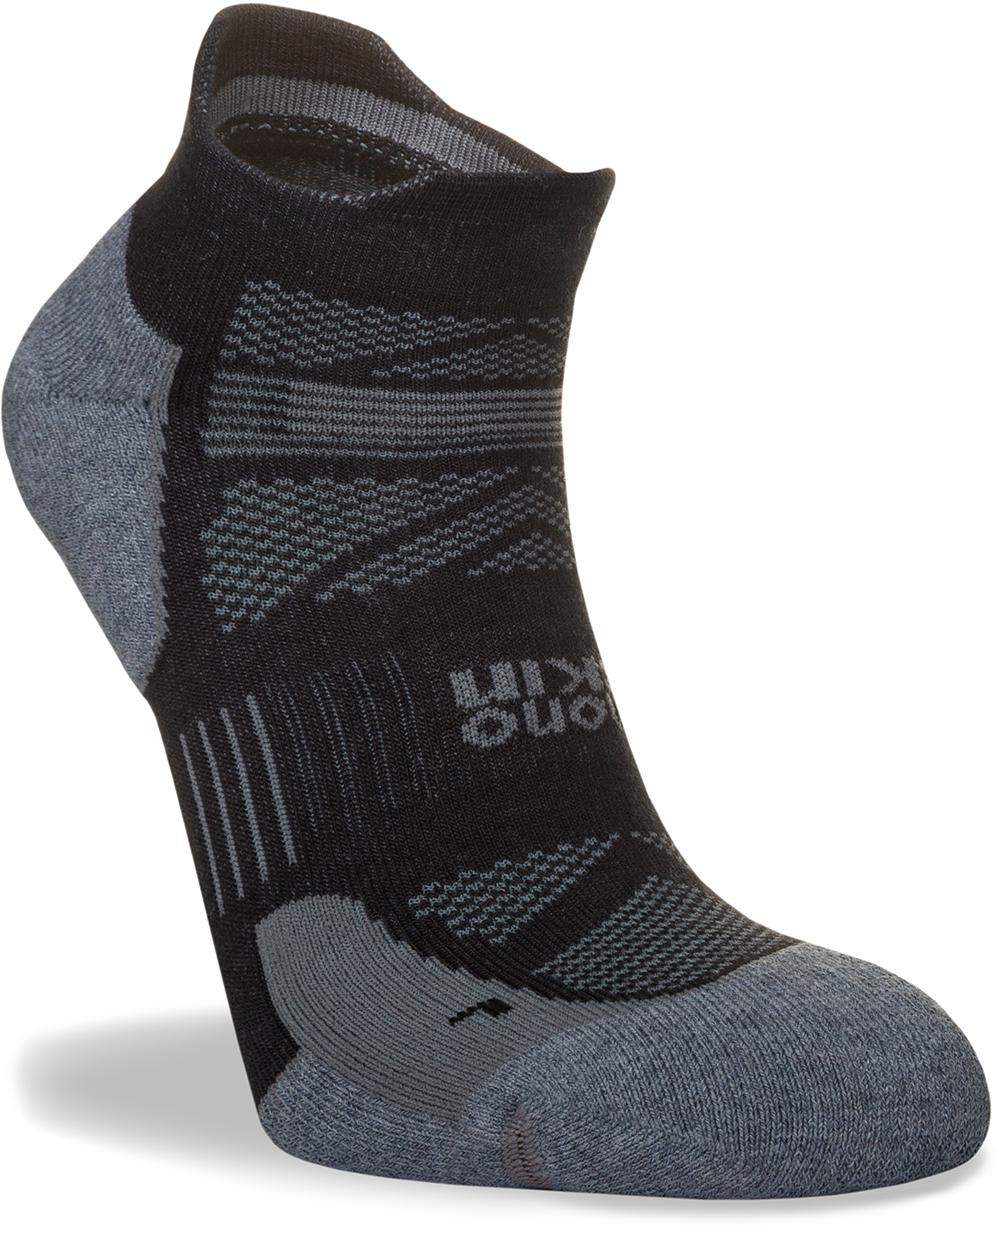 Hilly Womens Supreme Socklet - Black/grey Marl